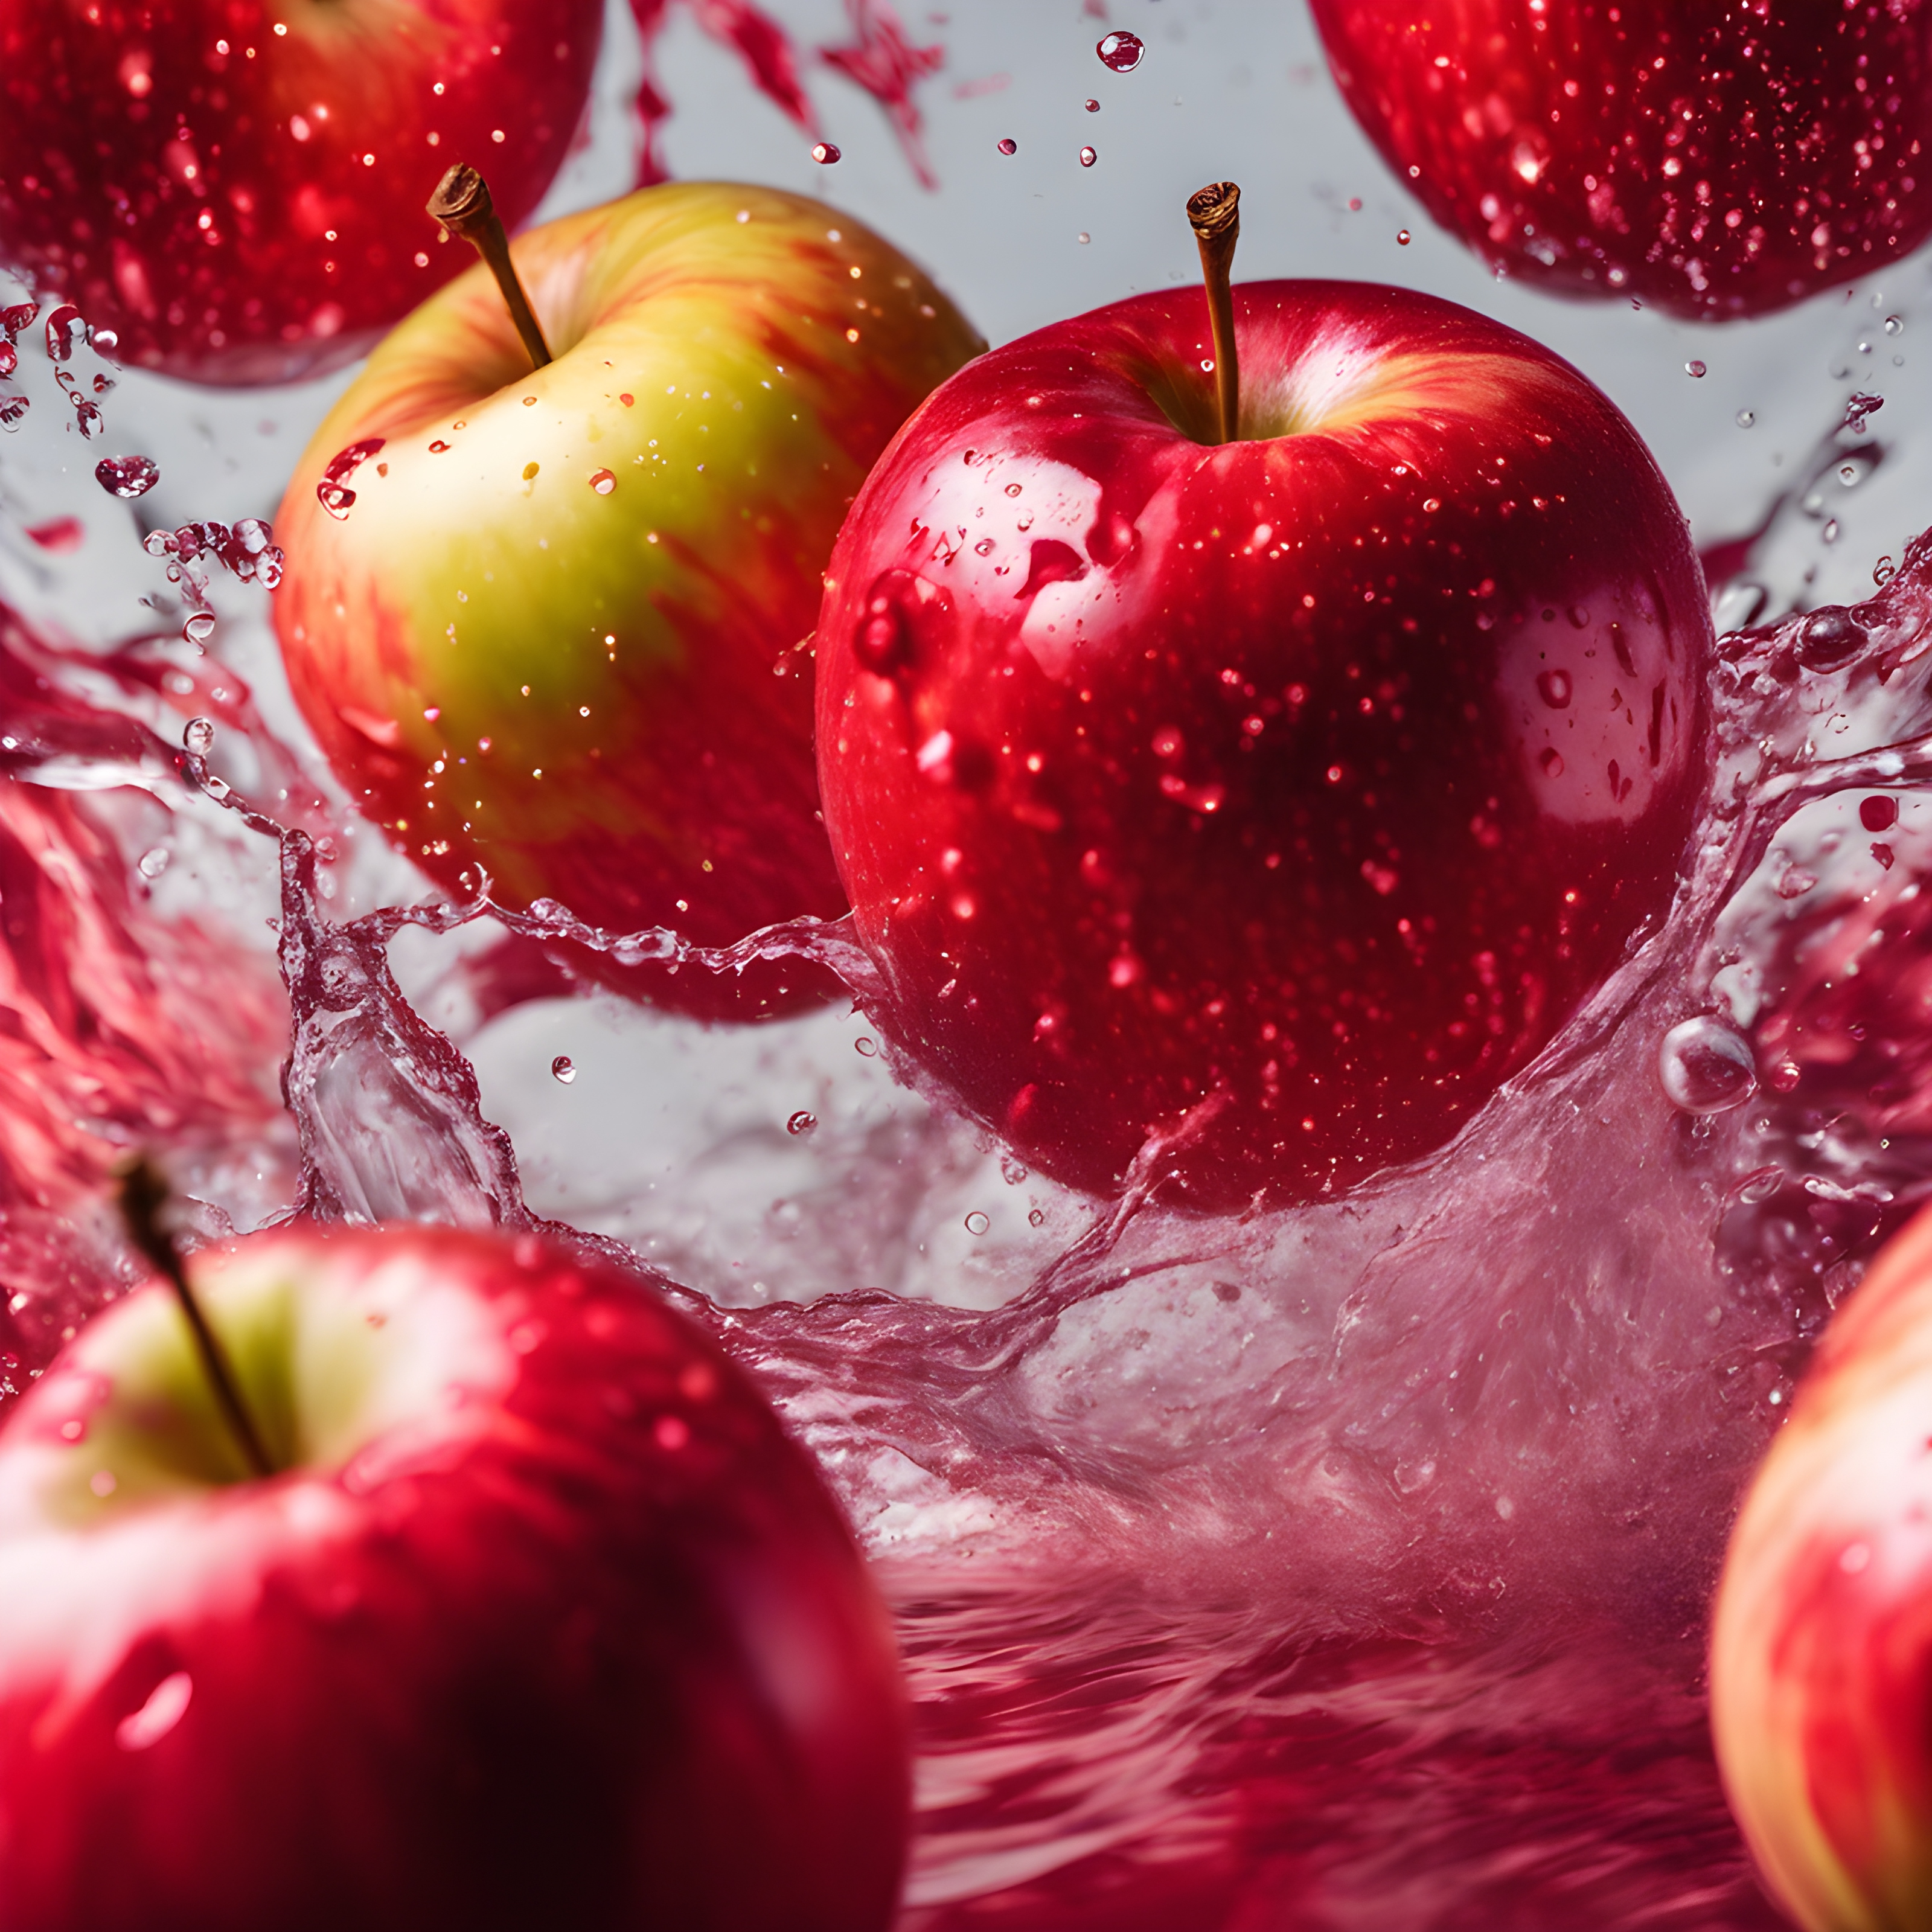 สร้างภาพ ลูกแอปเปิ้ลในอากาศที่กระจัดกระจายทั้งหมดลอยอยู่ในพื้นที่ที่มีชีวิตชีวาเชิงนามธรรม ธีมสีแดงพาสเทล สีแดงสดใส ของเหลว ความกระหาย ปะทะกับน้ำ มีน้ำกระเซ็น แสงที่ตัดกันอย่างสดใส เฉดสีที่น่าทึ่ง การเคลื่อนไหว ระเบิดได้ เปียก แสงถ่ายภาพผลิตภัณฑ์แบบไดนามิกที่สวยงาม เจ้าอารมณ์ น่าทึ่ง ภาพผลิตภัณฑ์ เลนส์ 50 มม. dof พื้นหลัง ไม่มีที่ติ น่าตื่นเต้น สมจริงมาก กล้อง canon 1dx